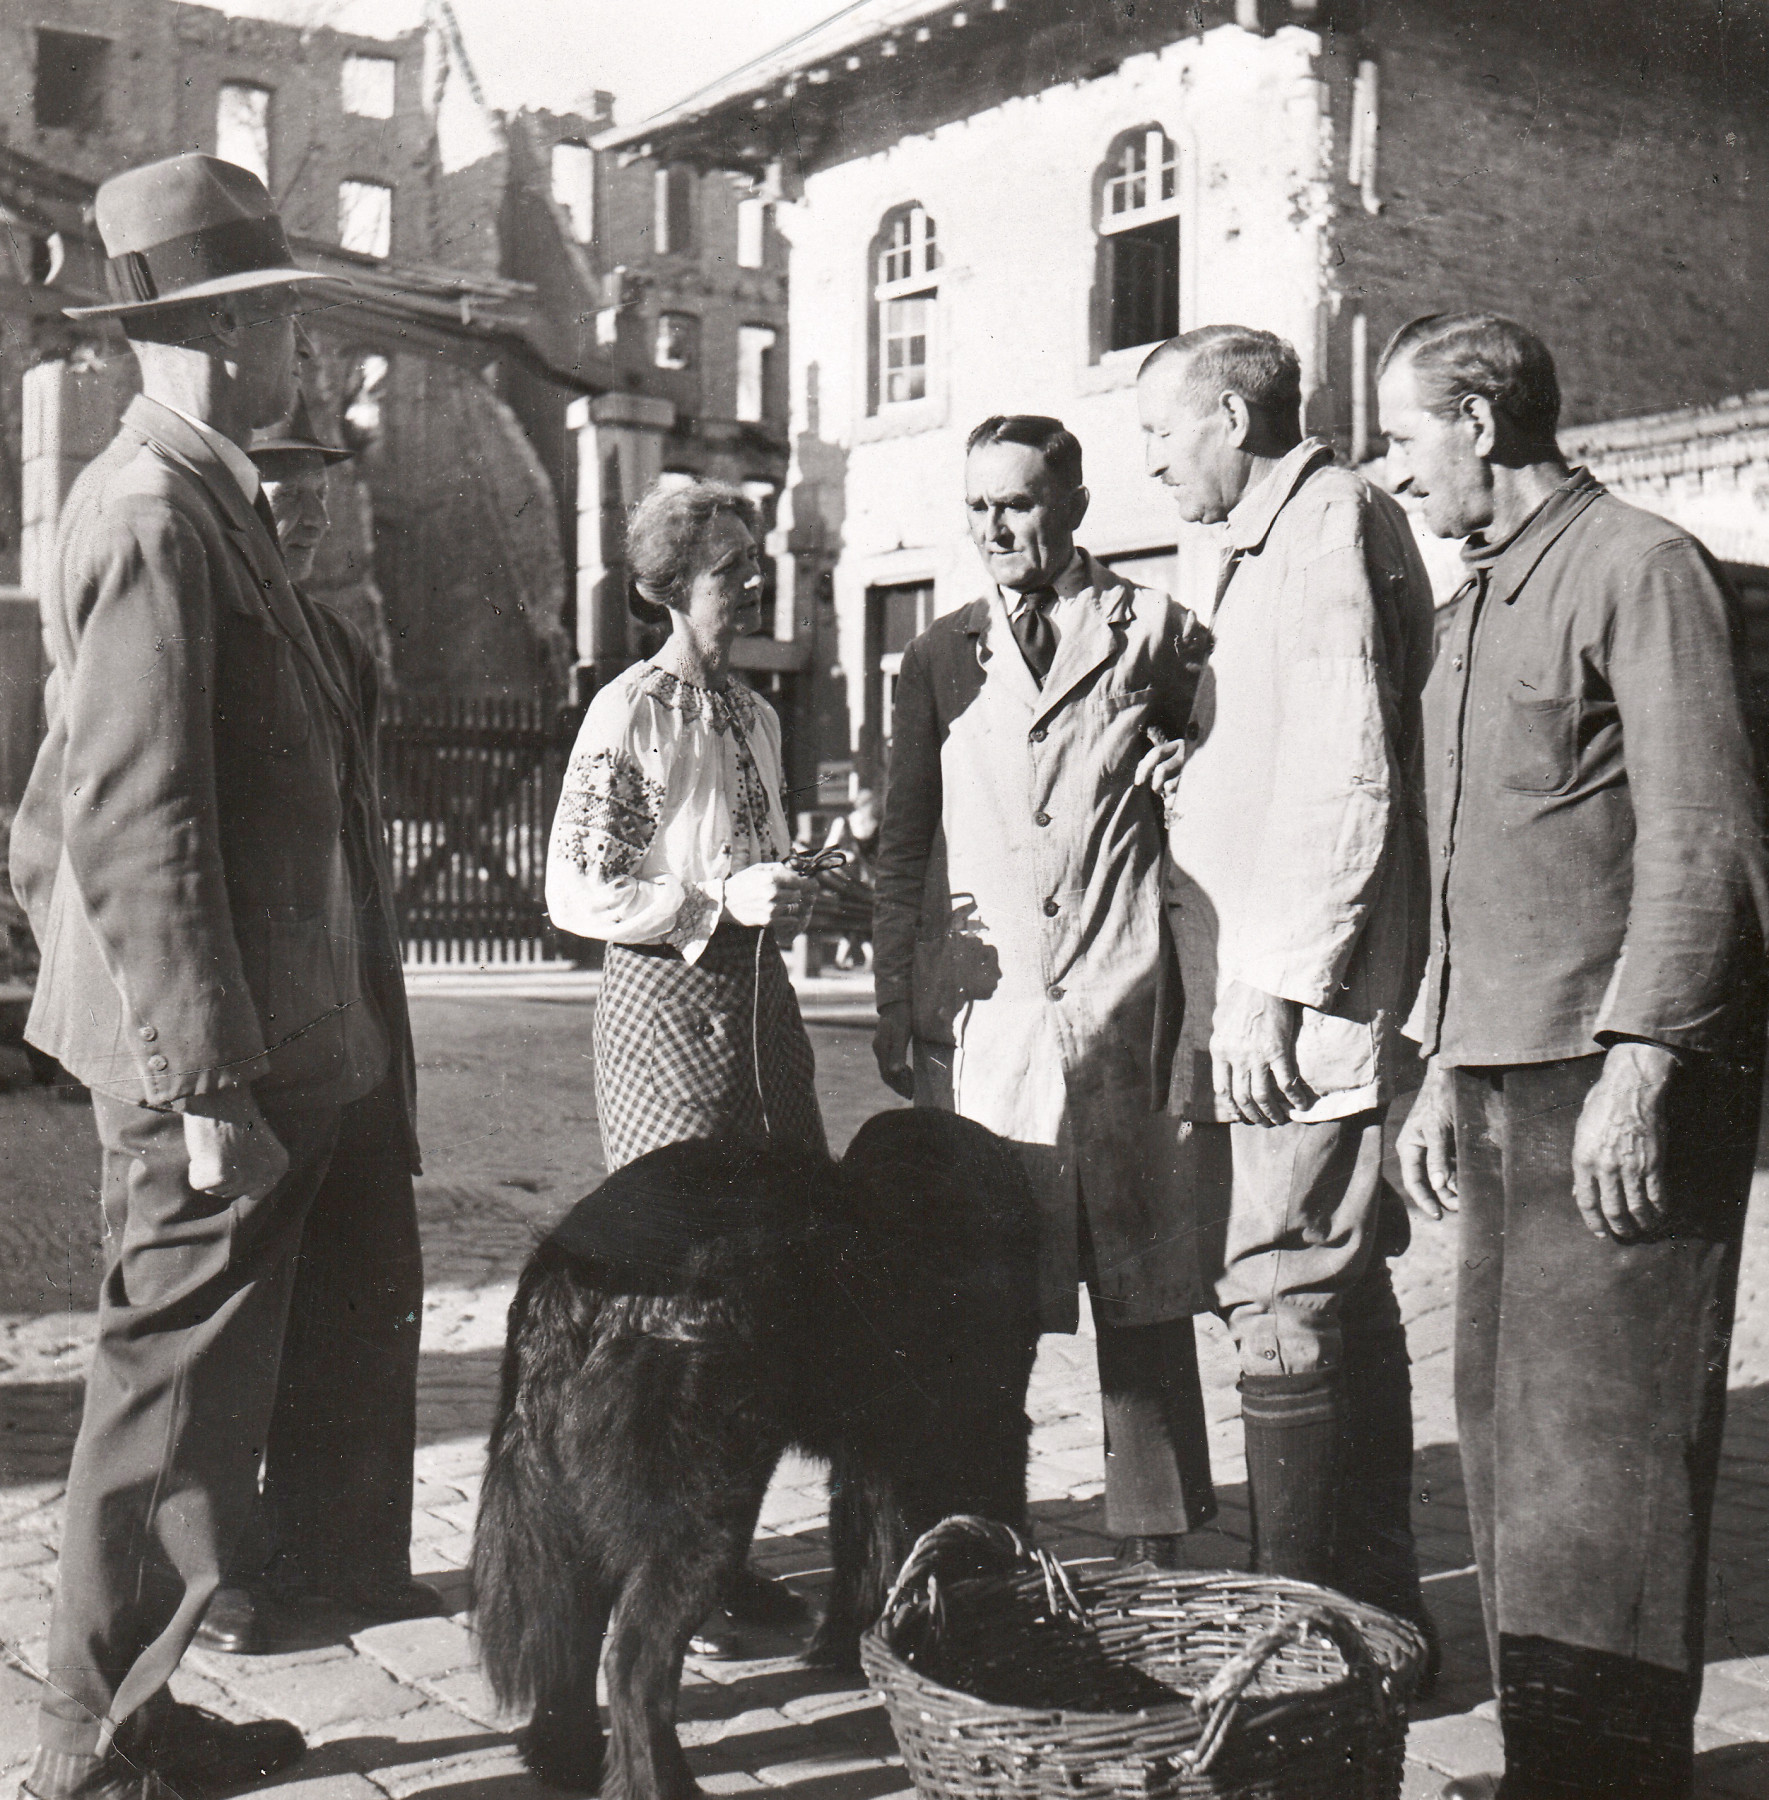 Schwarz-weiß Foto: Vier Männer, eine Frau und ein Hund stehen neben einem geflochtenen Korb, vor teilweise zerstörten Hausfassaden.